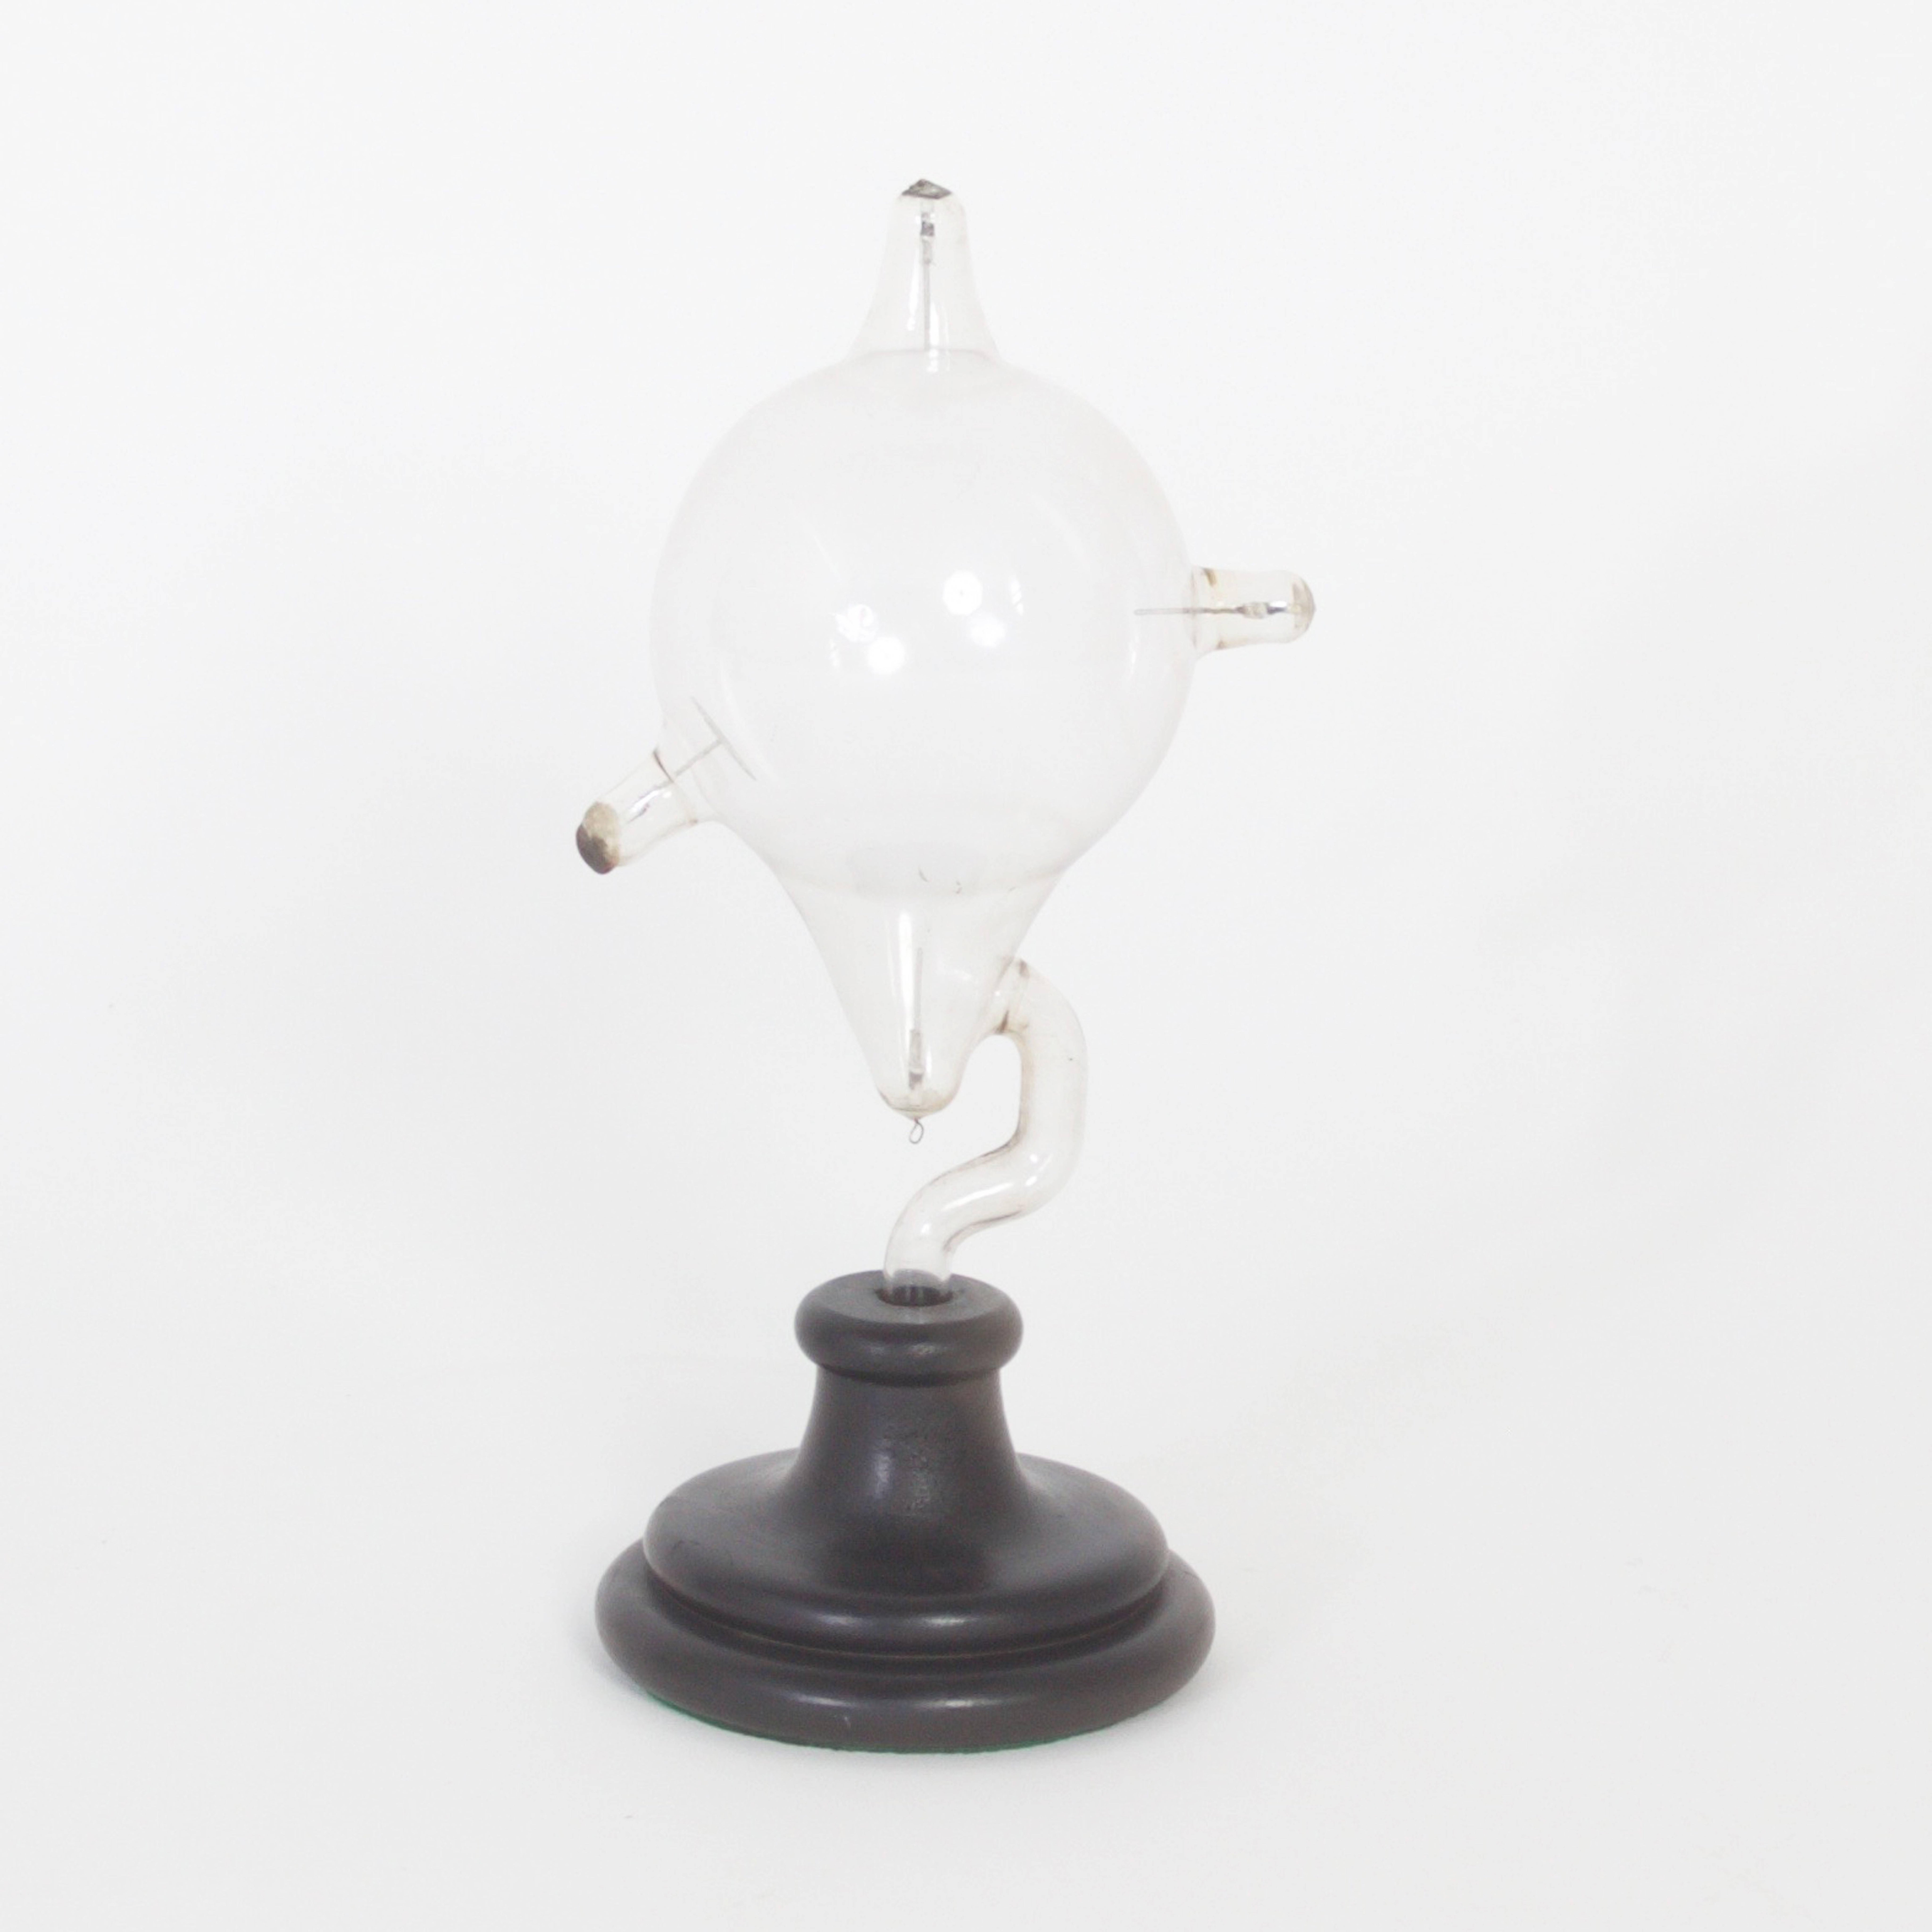 20th Century Handblown Glass Scientific Instruments 